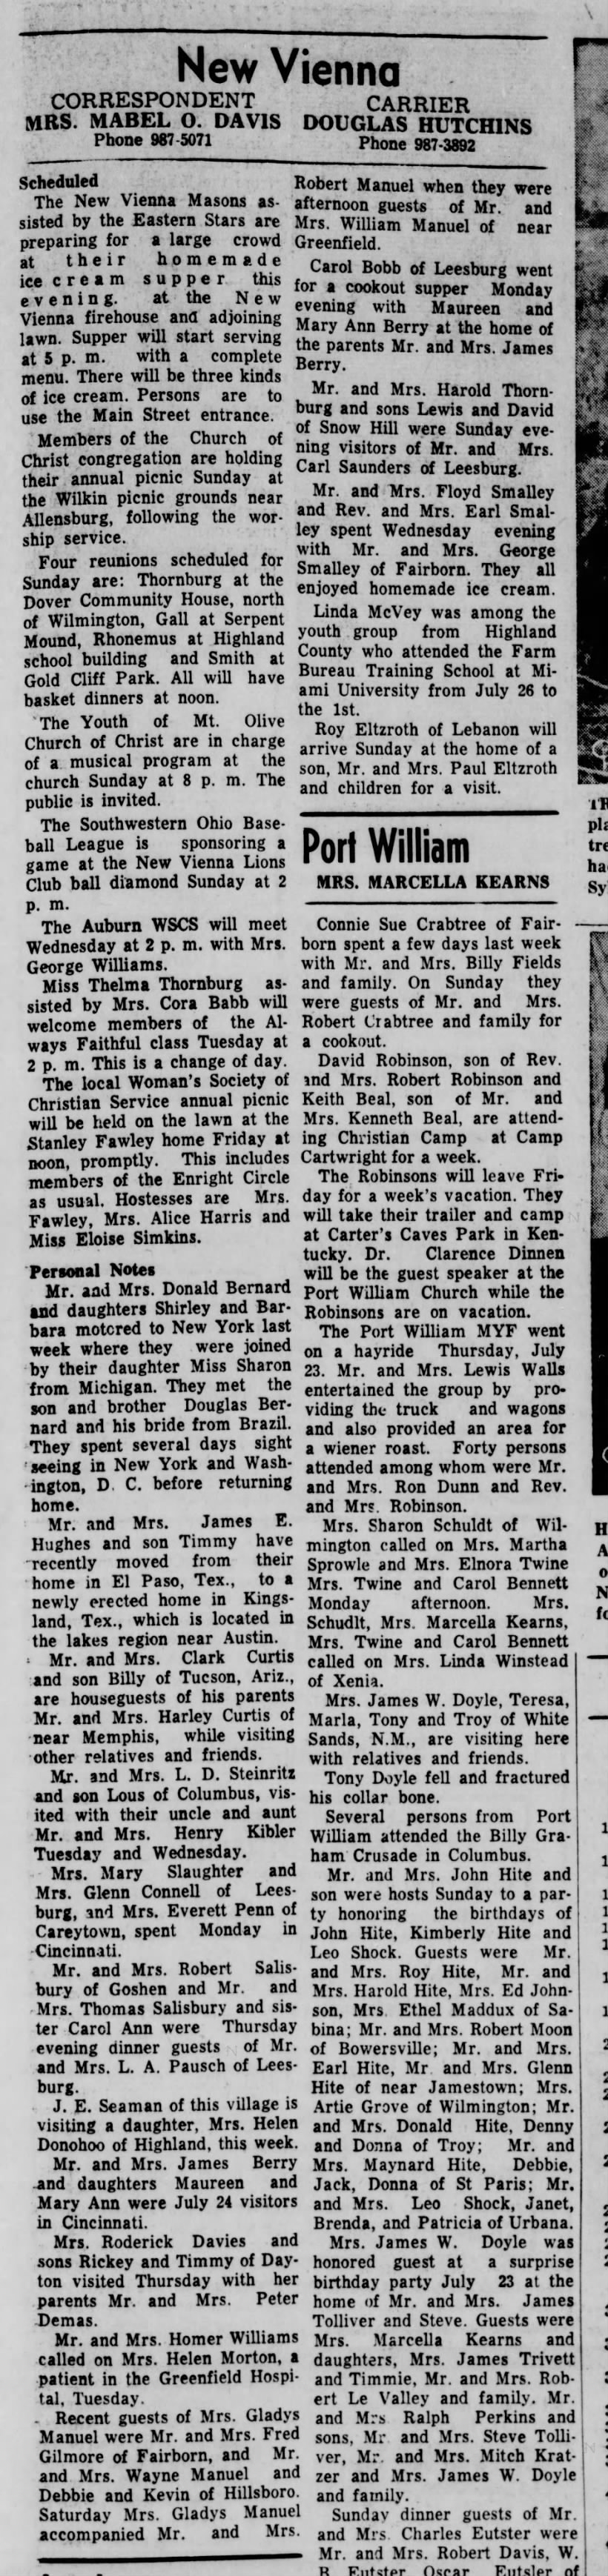 1964 New Vienna News -Aug.1